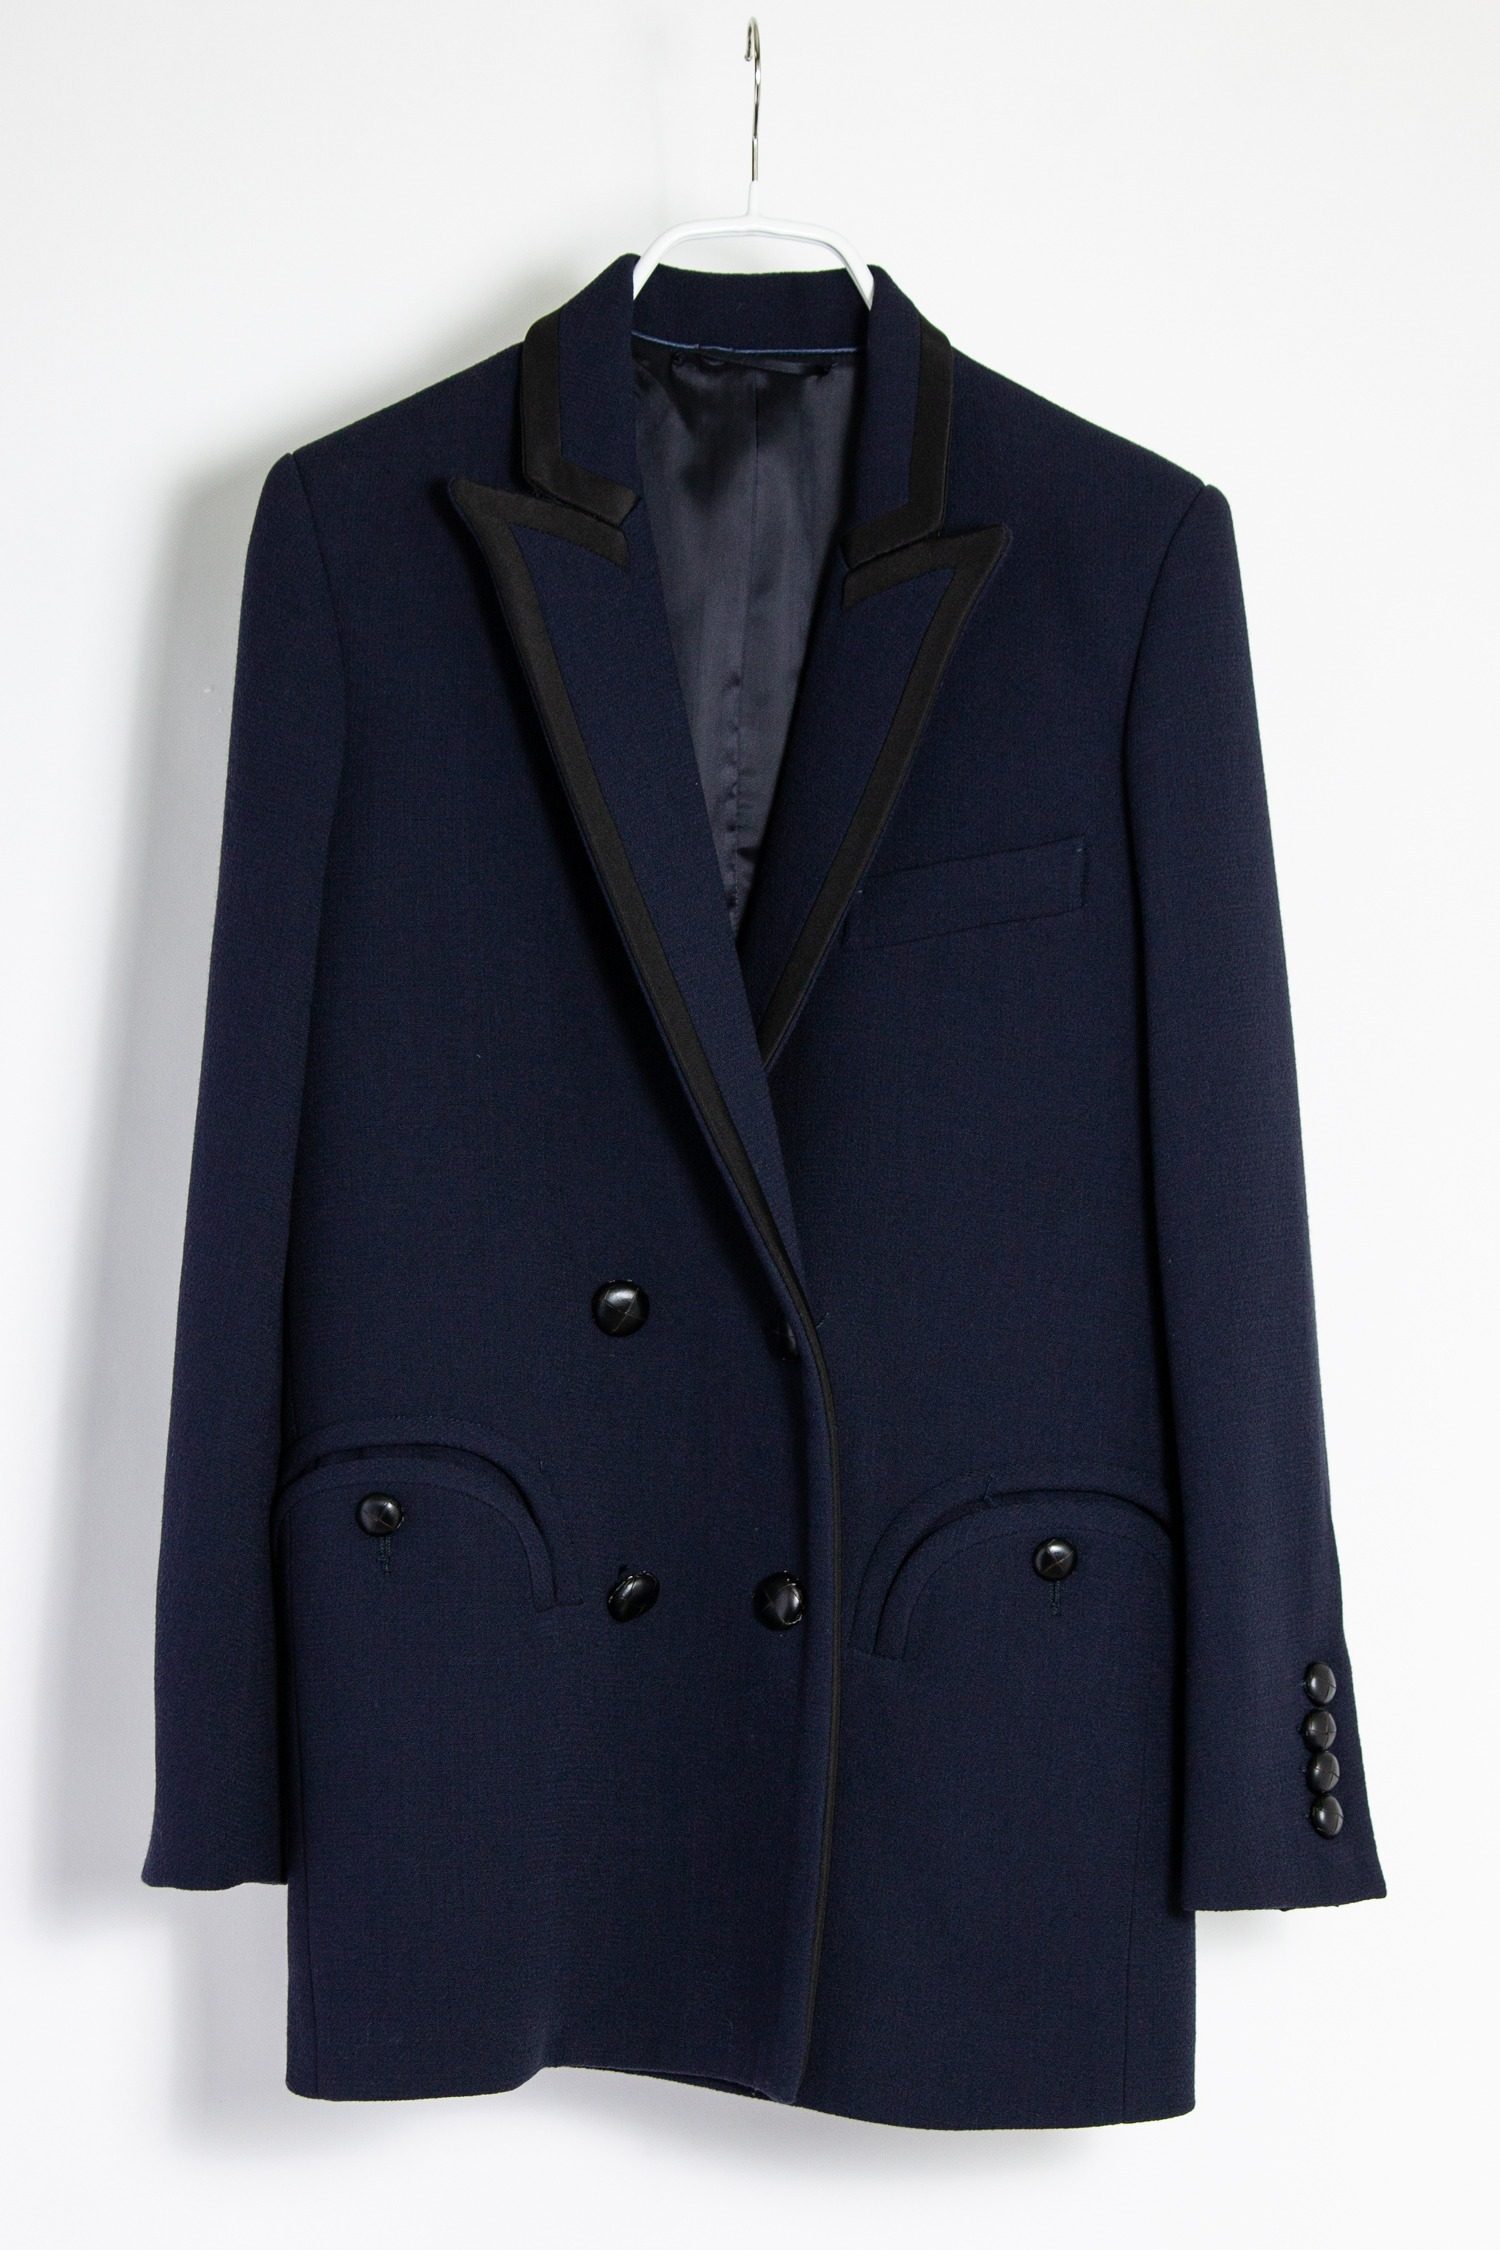 Blazé Milano "Everyday Blazer" in dunkelblau mit schwarzen Details